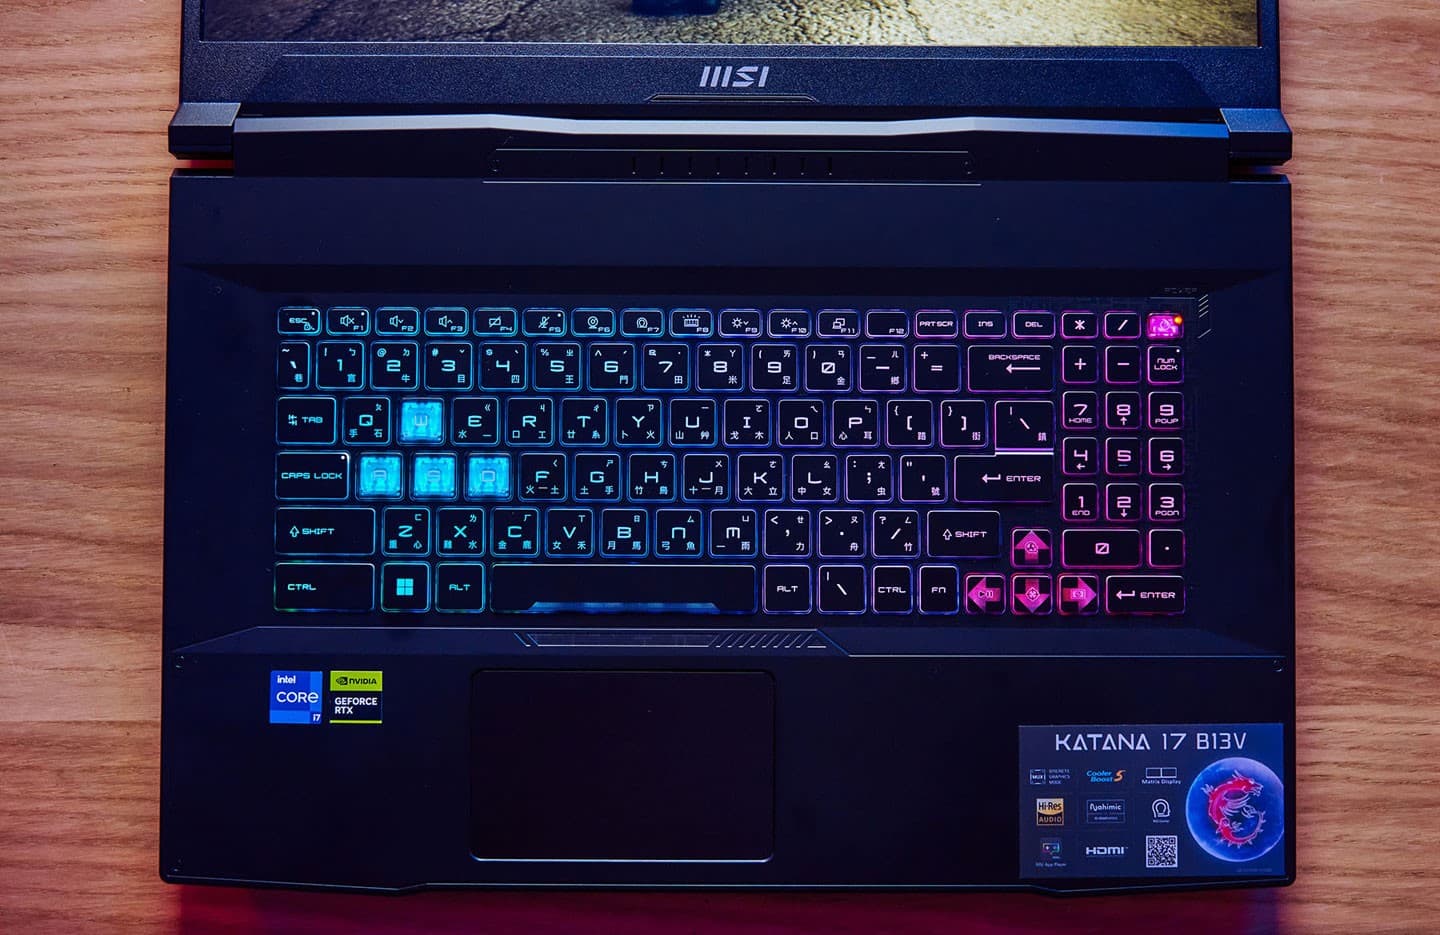 機身 C 面為島式鍵盤配與機身同色系的鍵帽，四區 RGB 全彩背光十分亮眼，按鍵也有 1.7 mm 的長鍵程，經實測手感的表現確實優異。